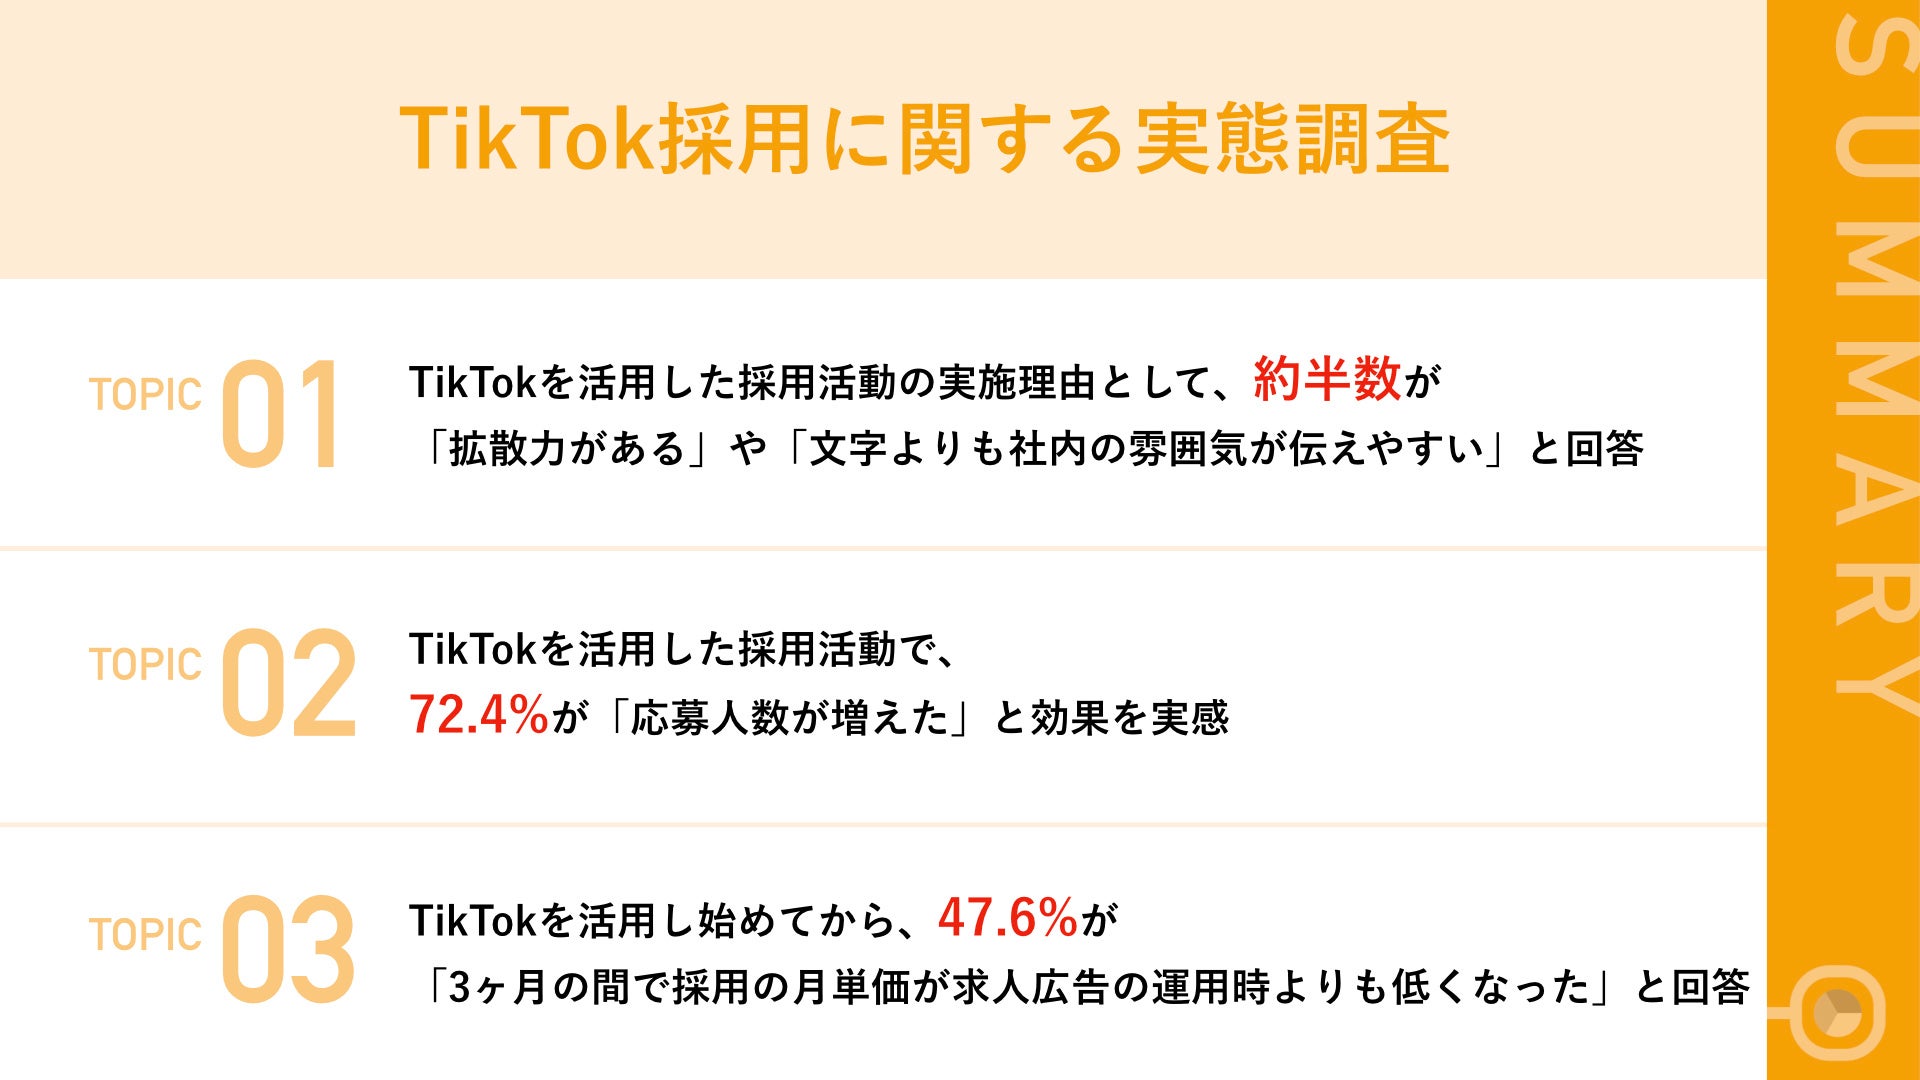 TikTok採用開始から、約半数が3ヶ月以内で「求人広告の運用時よりもコストが下がった」と回答のサブ画像1